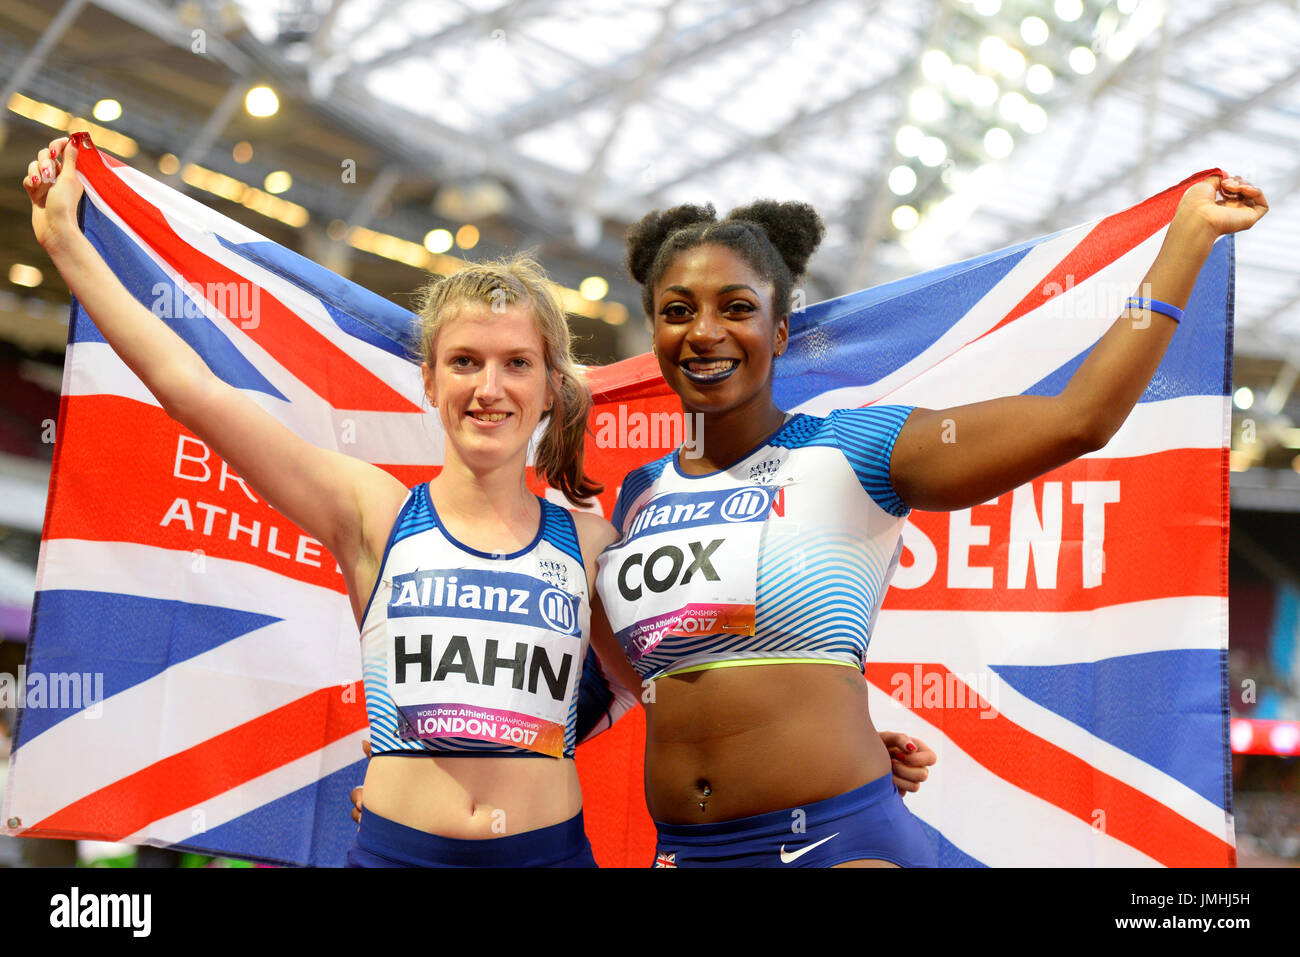 Sophie Hahn und Kadeena Cox fertig Doppelsieg im 100m T38 an die Welt Para Leichtathletik Champs im Londoner Stadion. Wir feiern mit Anschluß-Markierungsfahne Stockfoto